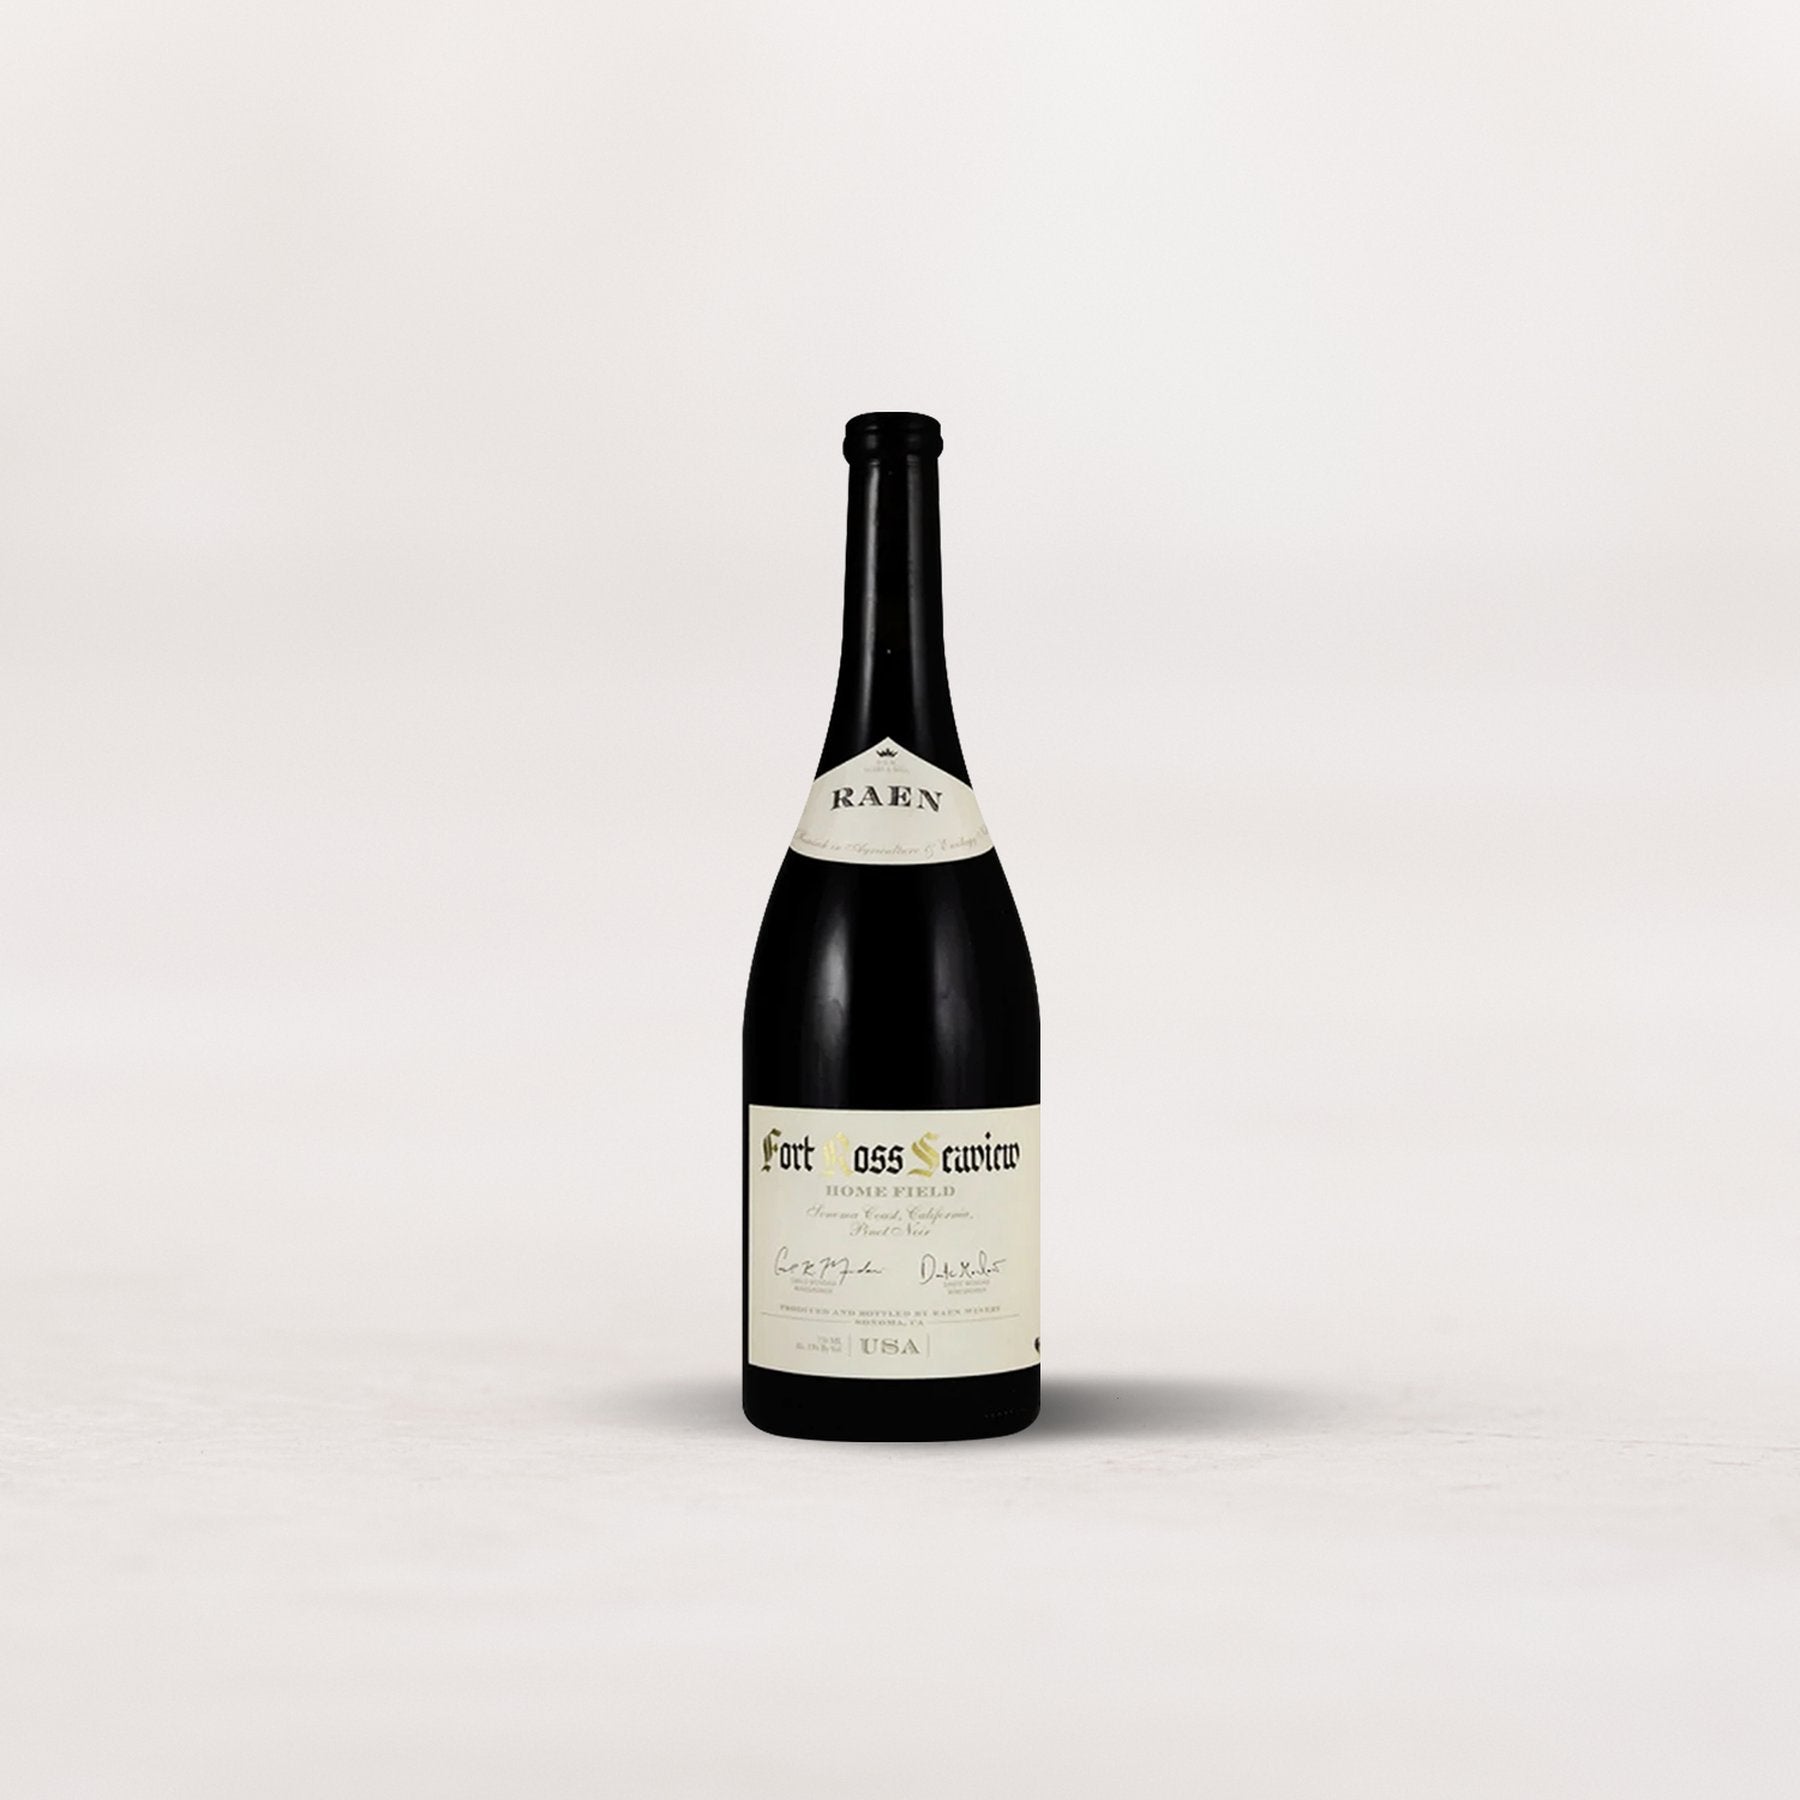 Raen, “Sea Field Vineyard” Pinot Noir